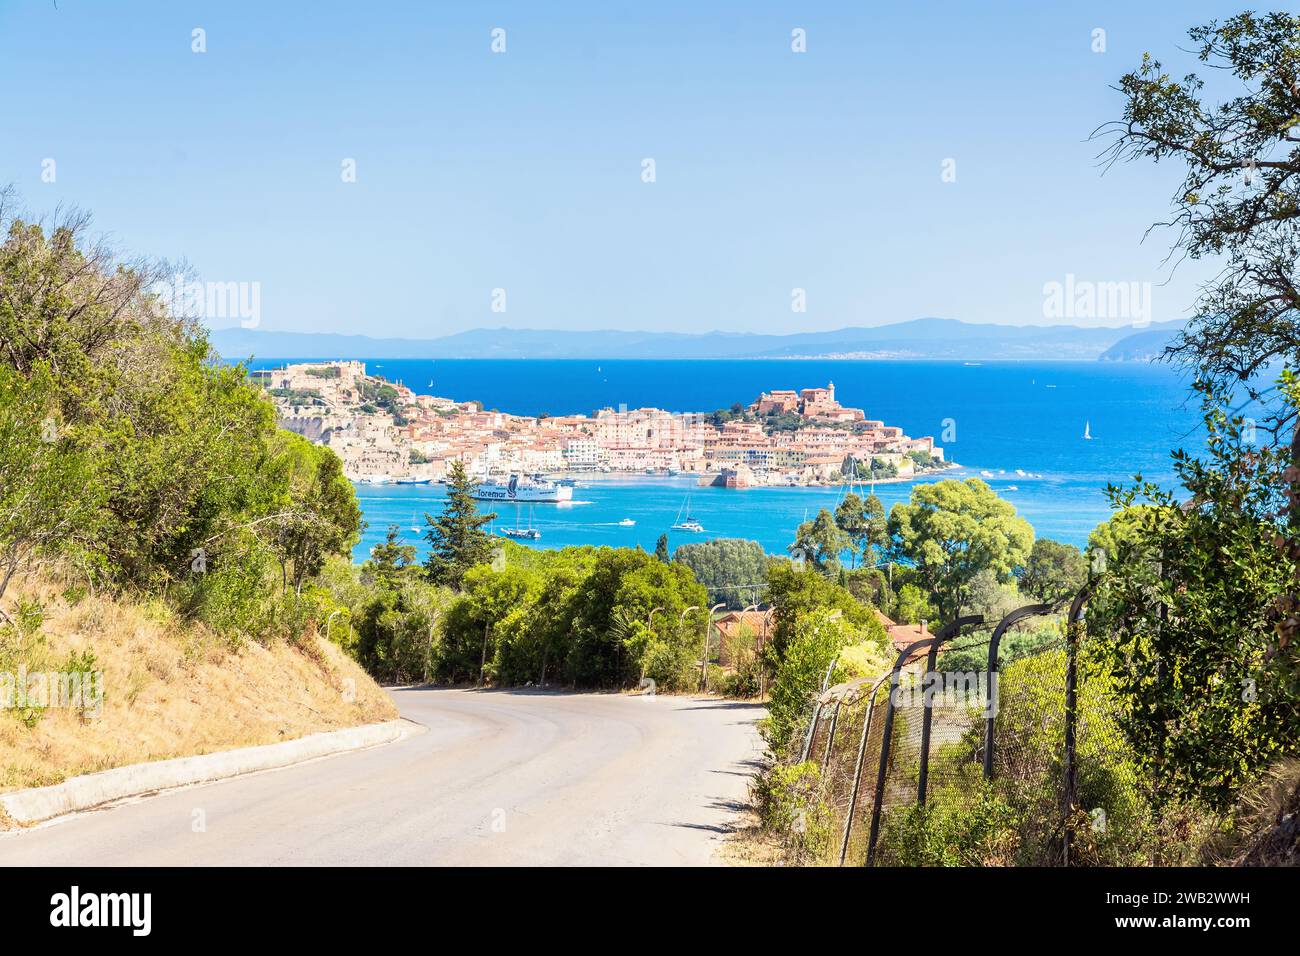 ISOLA d’ELBA, ITALIE - 28 août 2018 : vue panoramique de la ville et du port de Portoferraio, île d’Elbe, Toscane, Italie. Banque D'Images